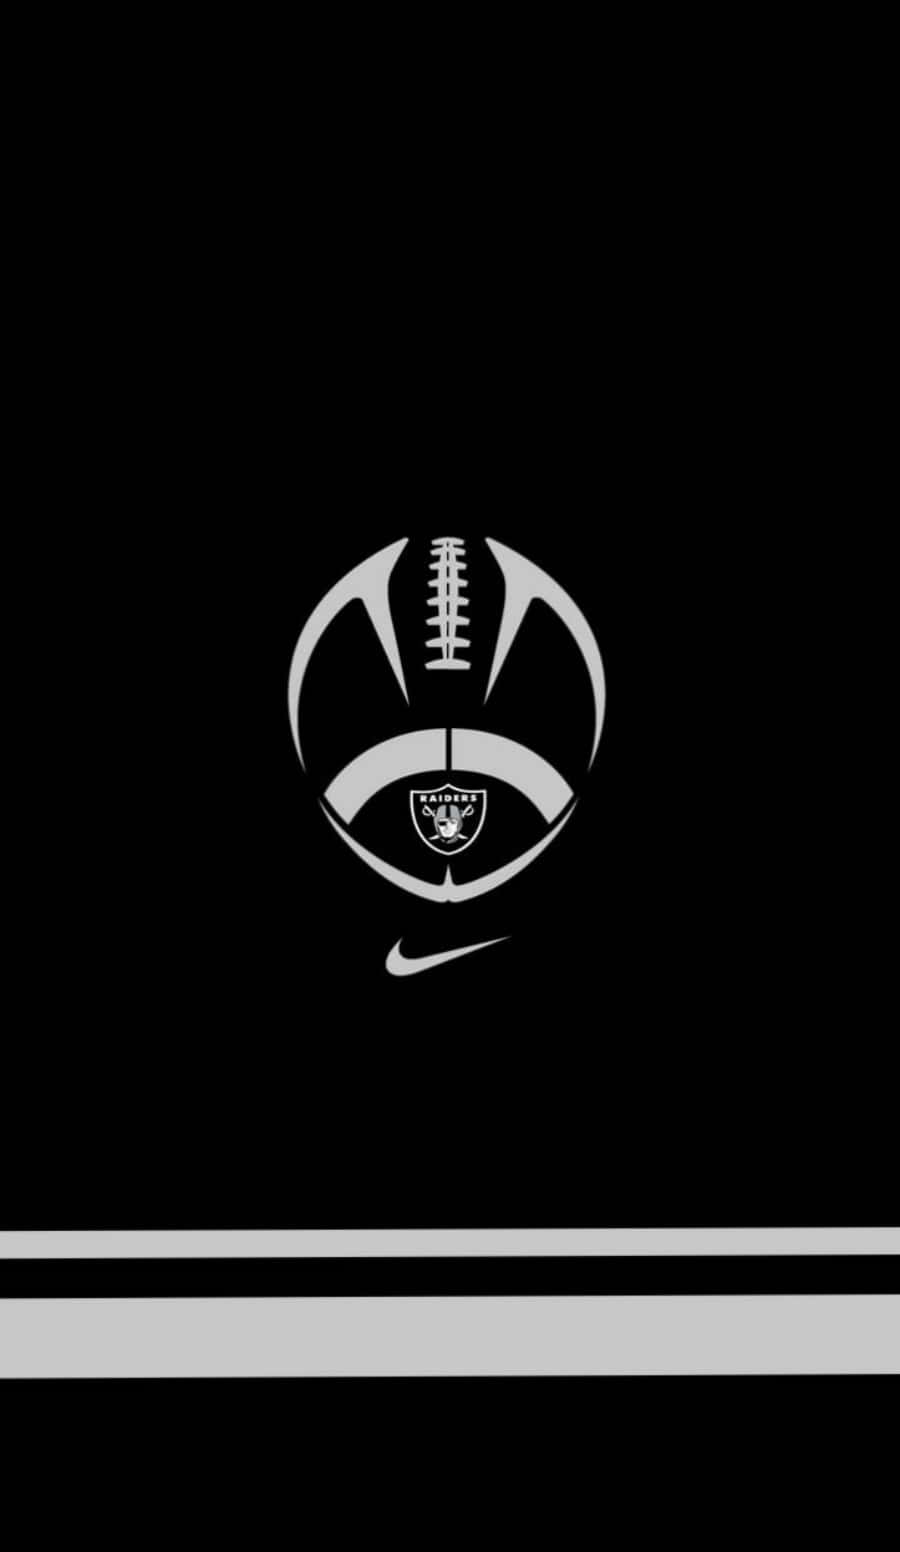 Logotipominimalista En Negro De Los Raiders De Fútbol Americano. Fondo de pantalla